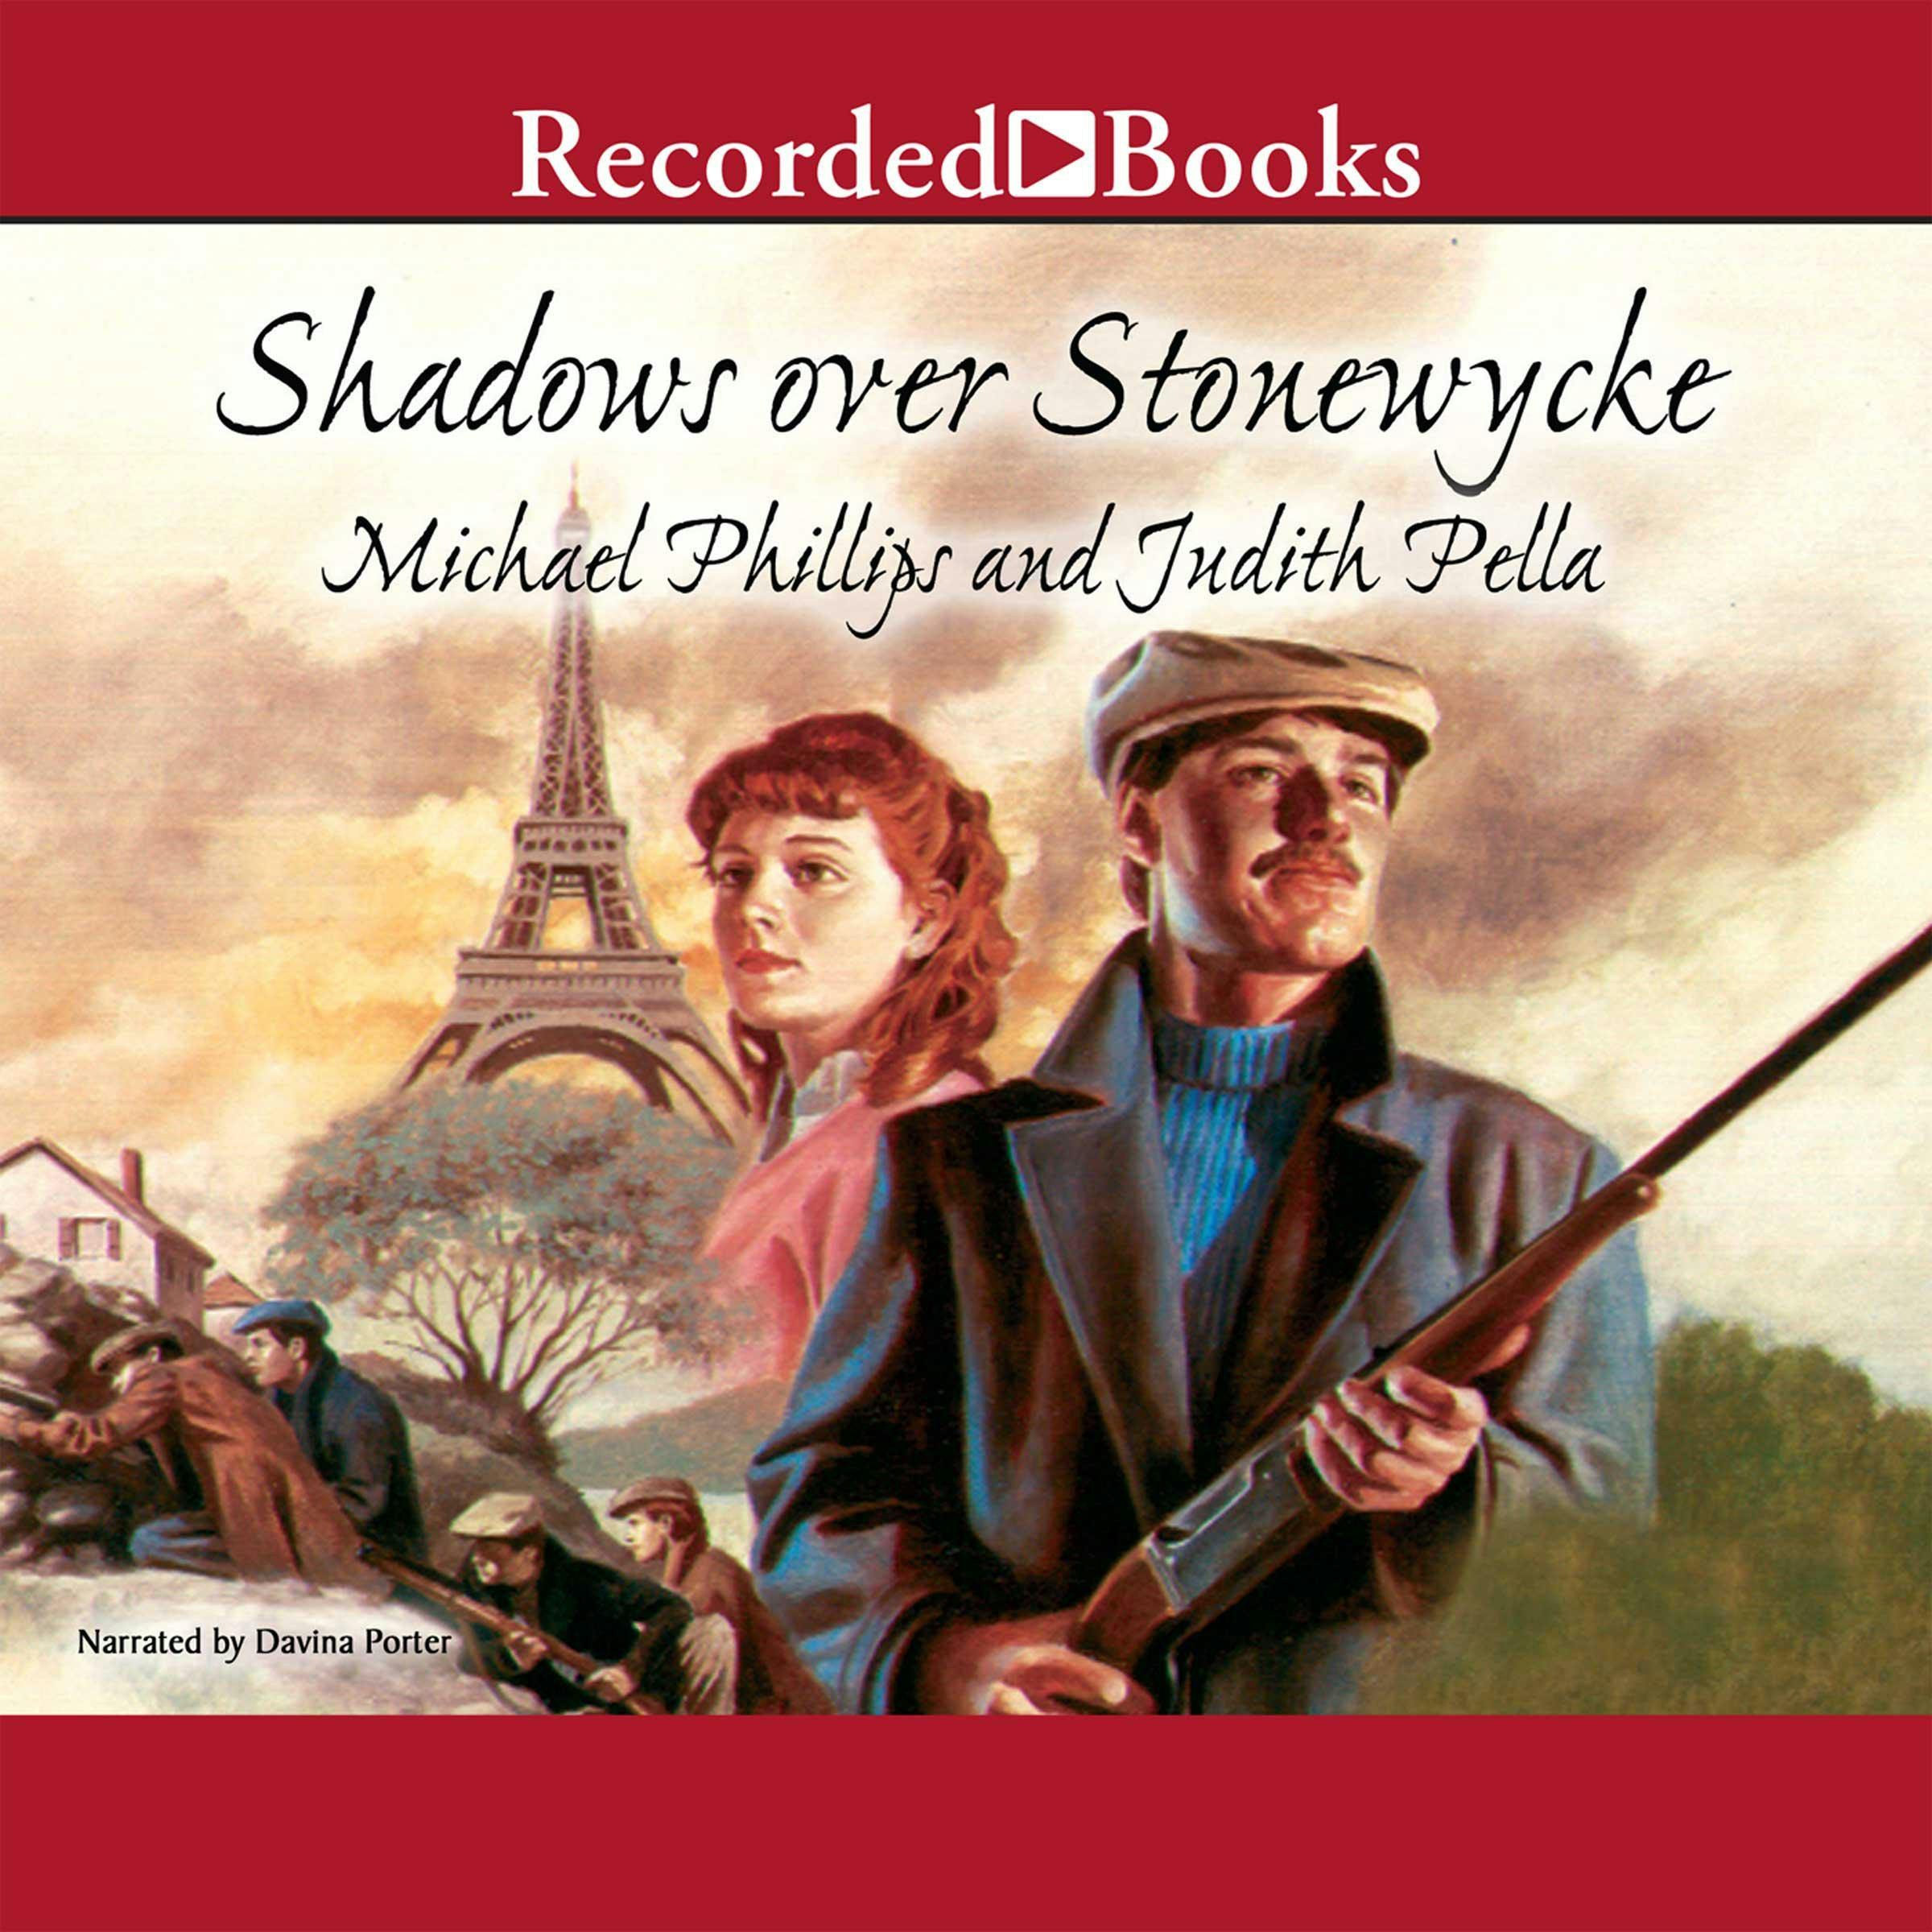 Shadows over Stonewycke: Stonewycke Legacy, Book 2 - Judith Pella, Michael Phillips